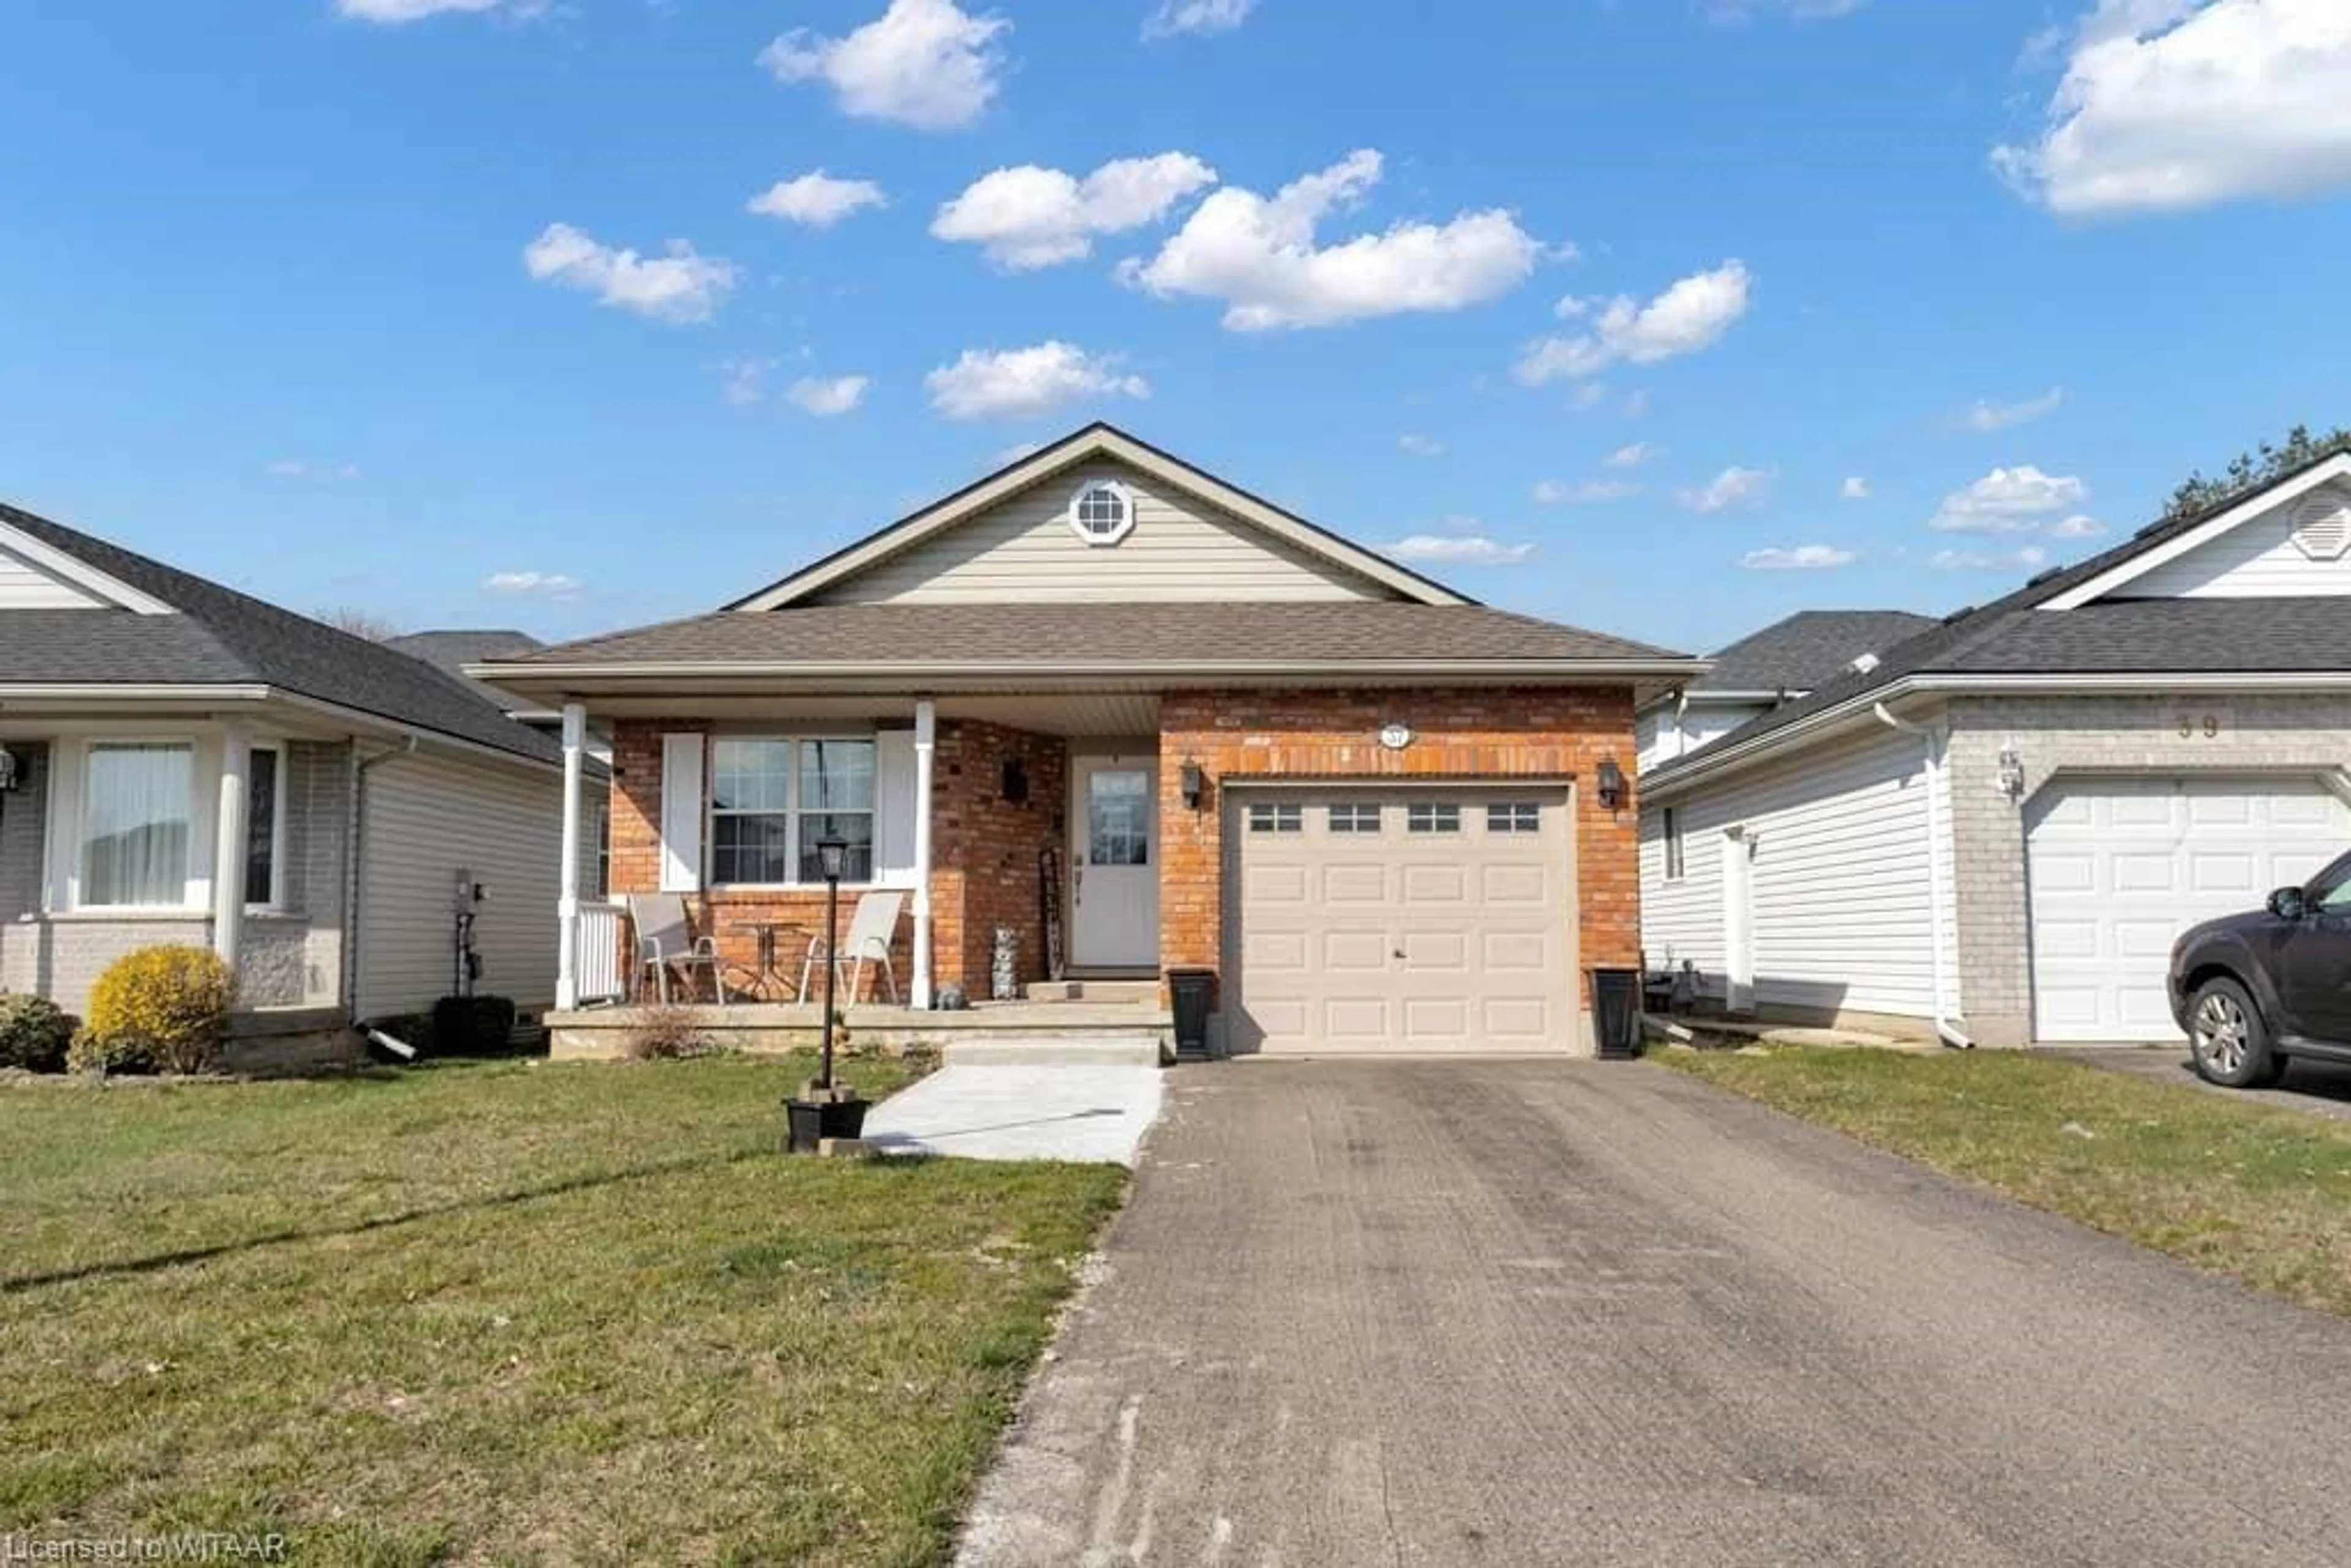 Frontside or backside of a home for 37 Peach St, Tillsonburg Ontario N4G 5N6